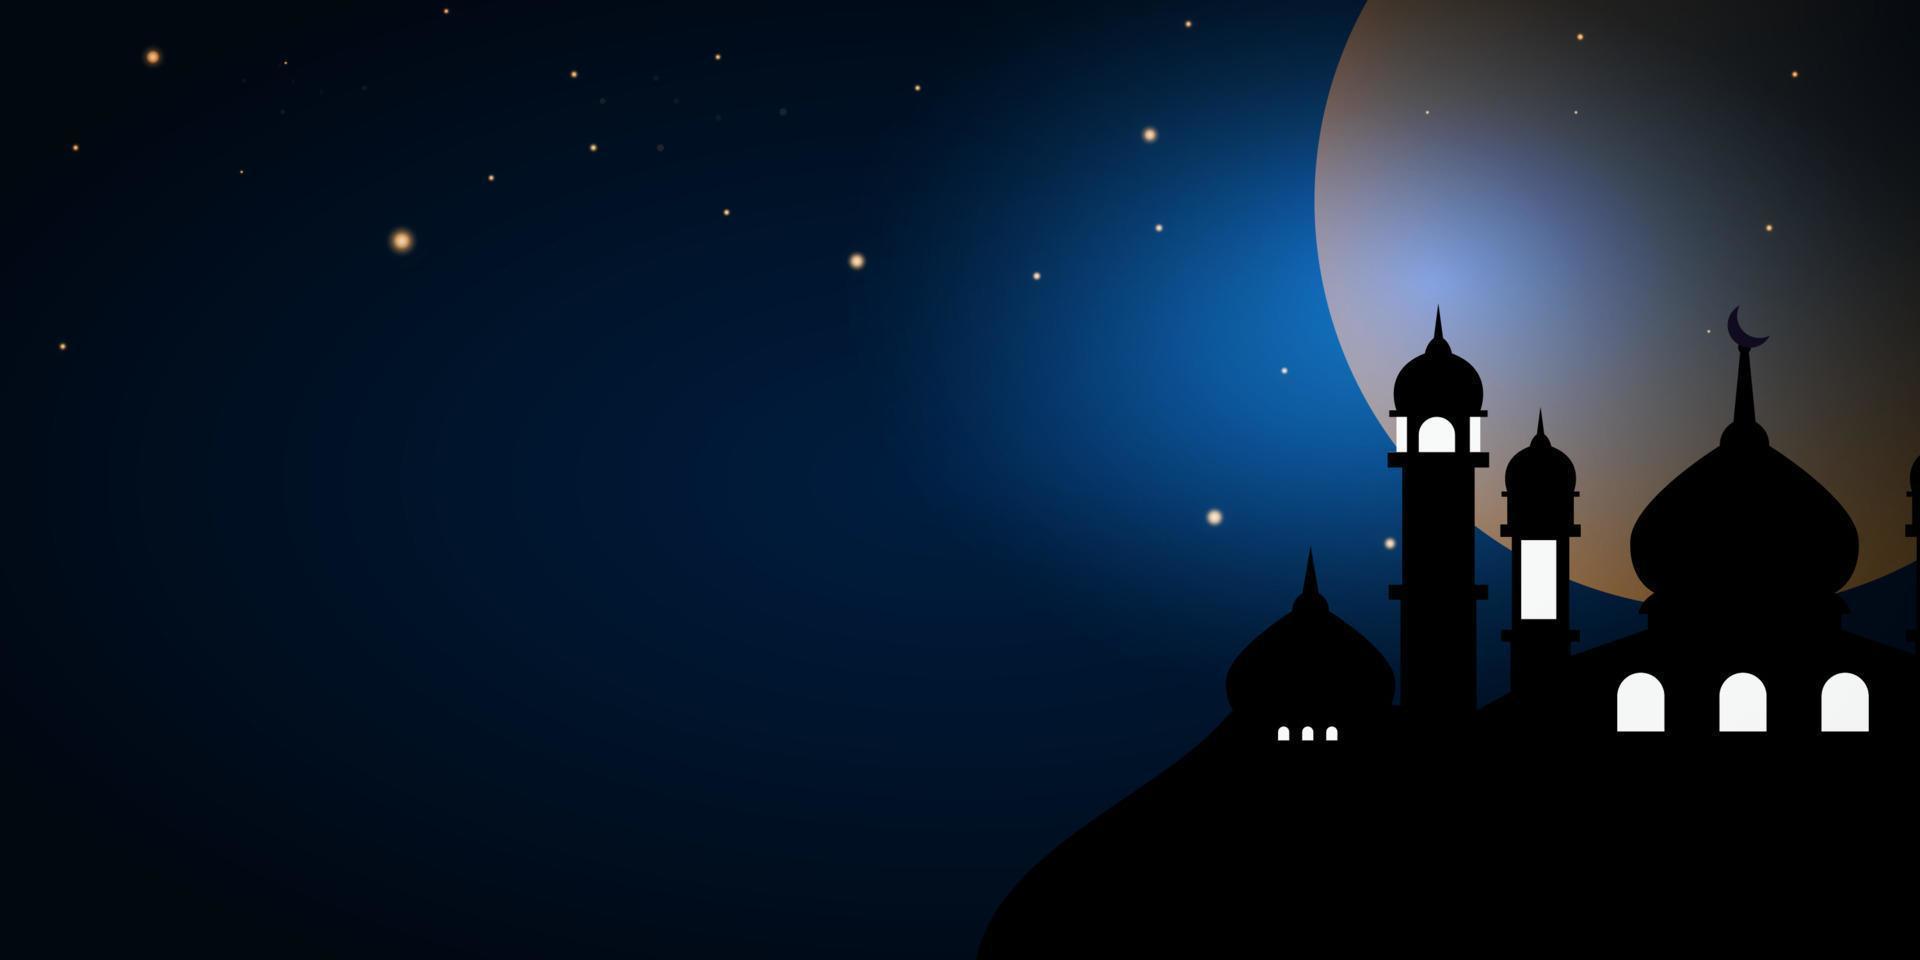 moskee achtergrond Bij nacht met vol maan. geschikt voor affiches, spandoeken, campagnes en groet kaarten voor Islamitisch vakantie met kopiëren ruimte voor uw tekst. vector